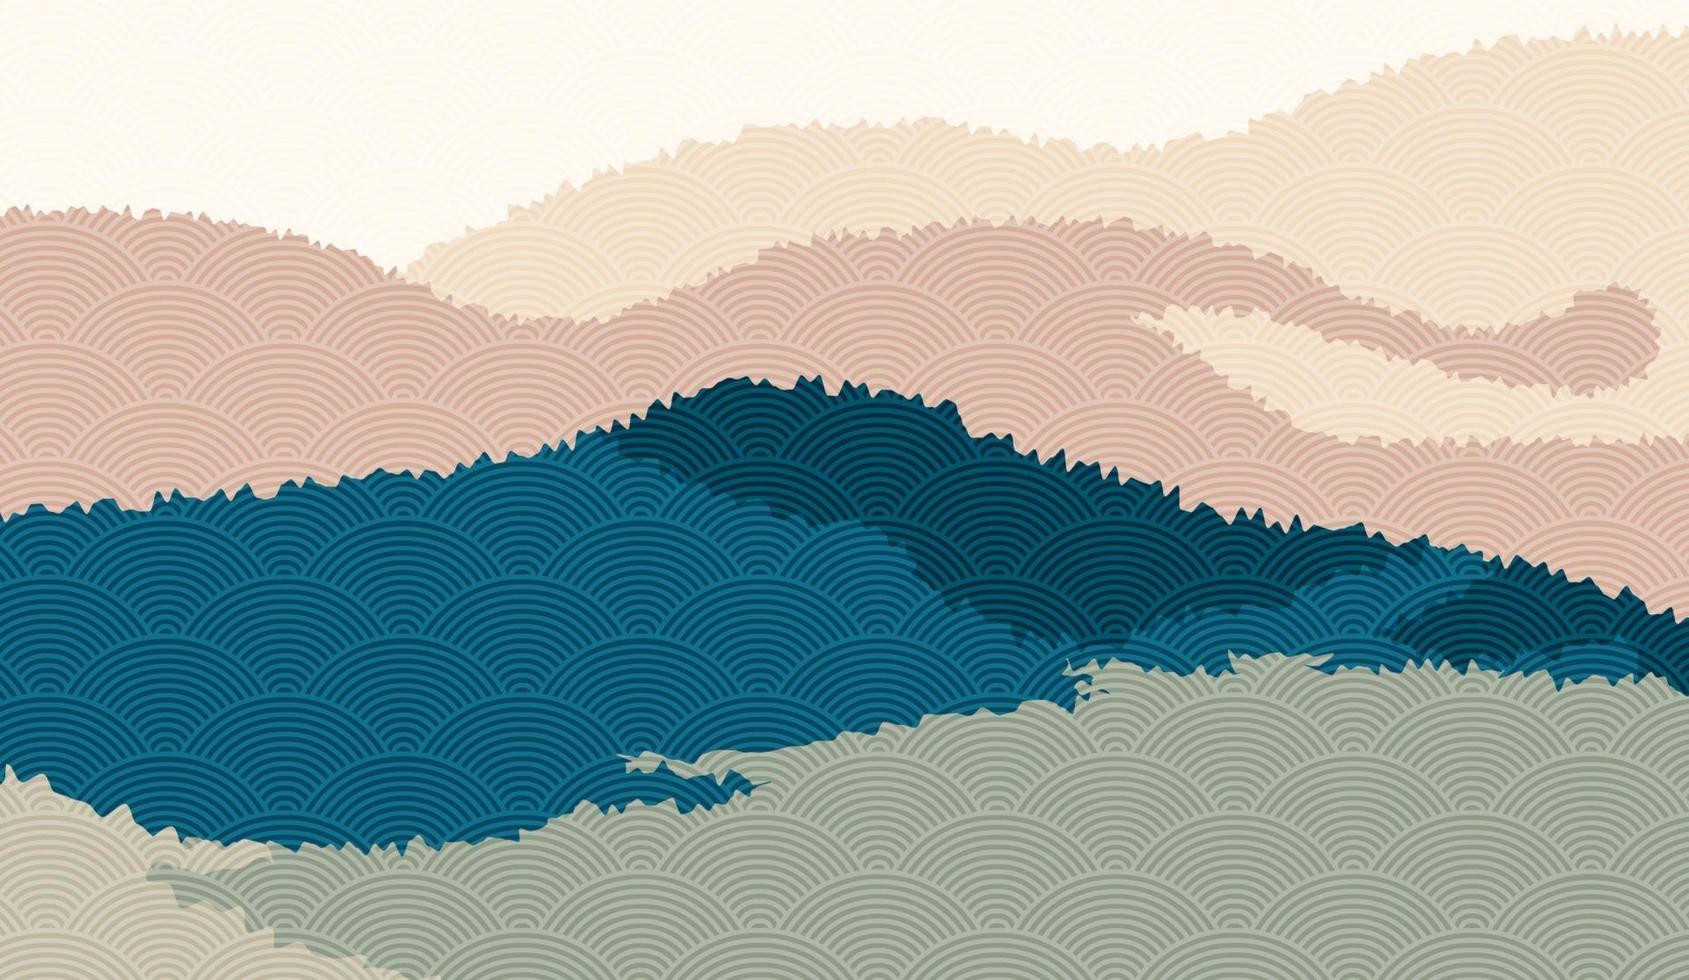 Fondo de paisaje con paisaje de montaña decorado con patrón de onda japonesa. Ilustración vectorial del tema de viajes y aventuras con paisaje de naturaleza abstracta vector